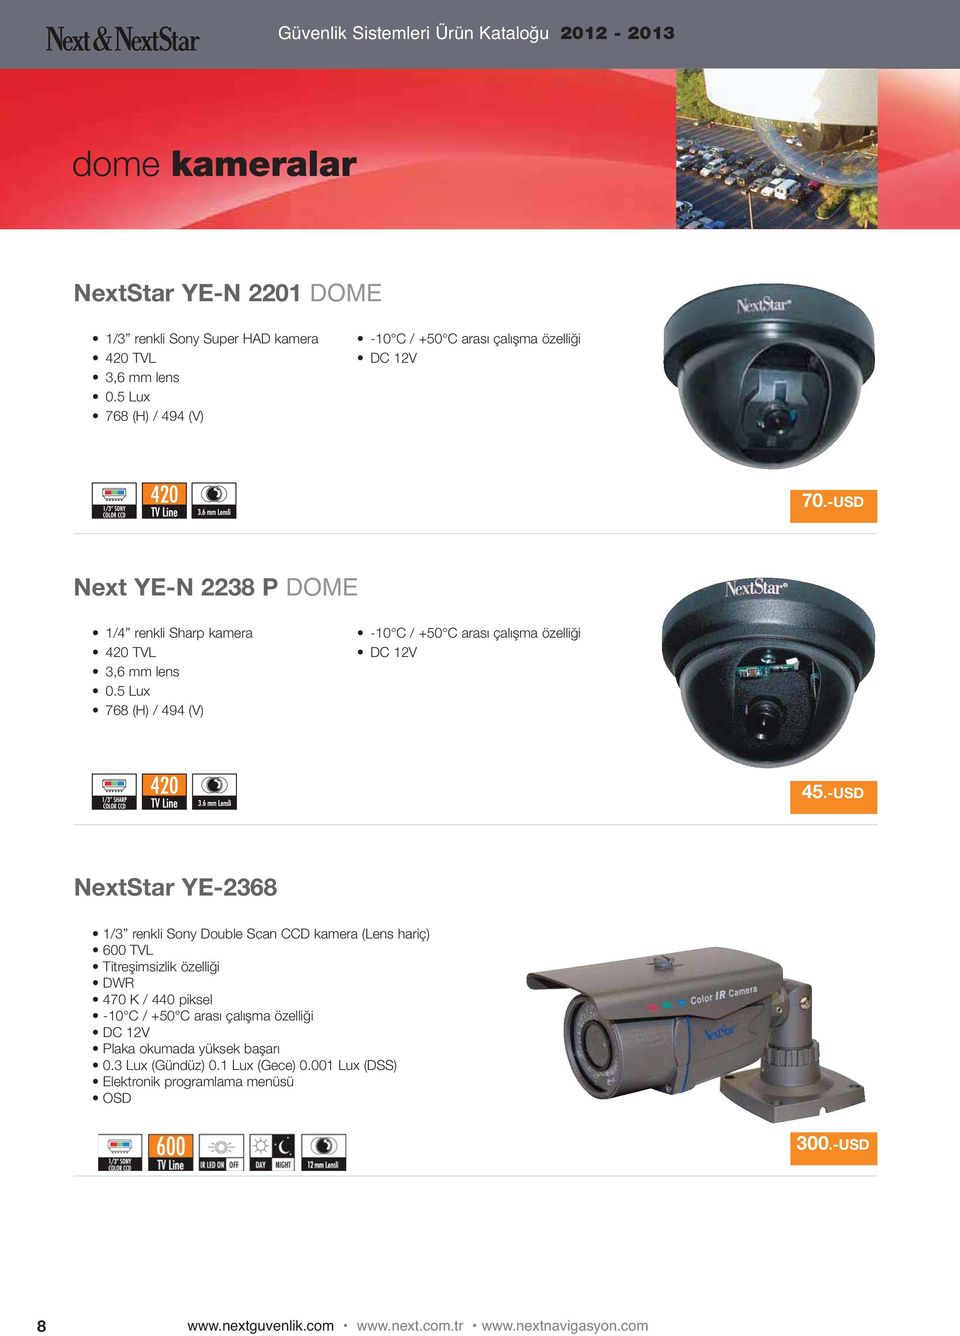 -USD NextStar YE-2368 1/3 renkli Sony Double Scan CCD kamera (Lens hariç) 600 TVL Titreşimsizlik özelliği DWR 470 K / 440 piksel -10 C / +50 C arası çalışma